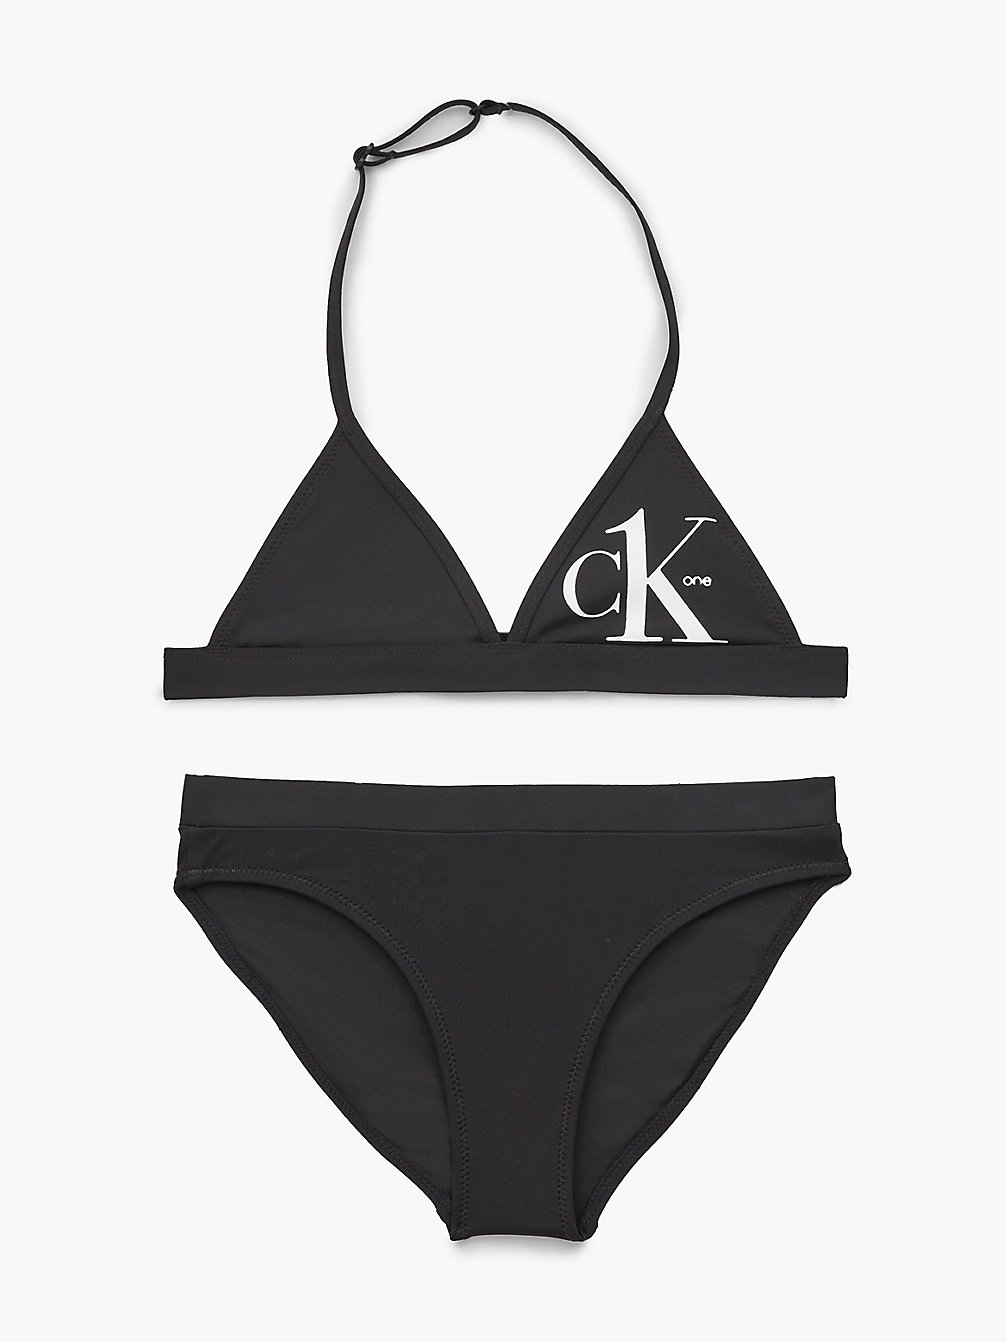 PVH BLACK > Bikini-Set Mit Triangel-Top Für Mädchen - CK One > undefined girls - Calvin Klein